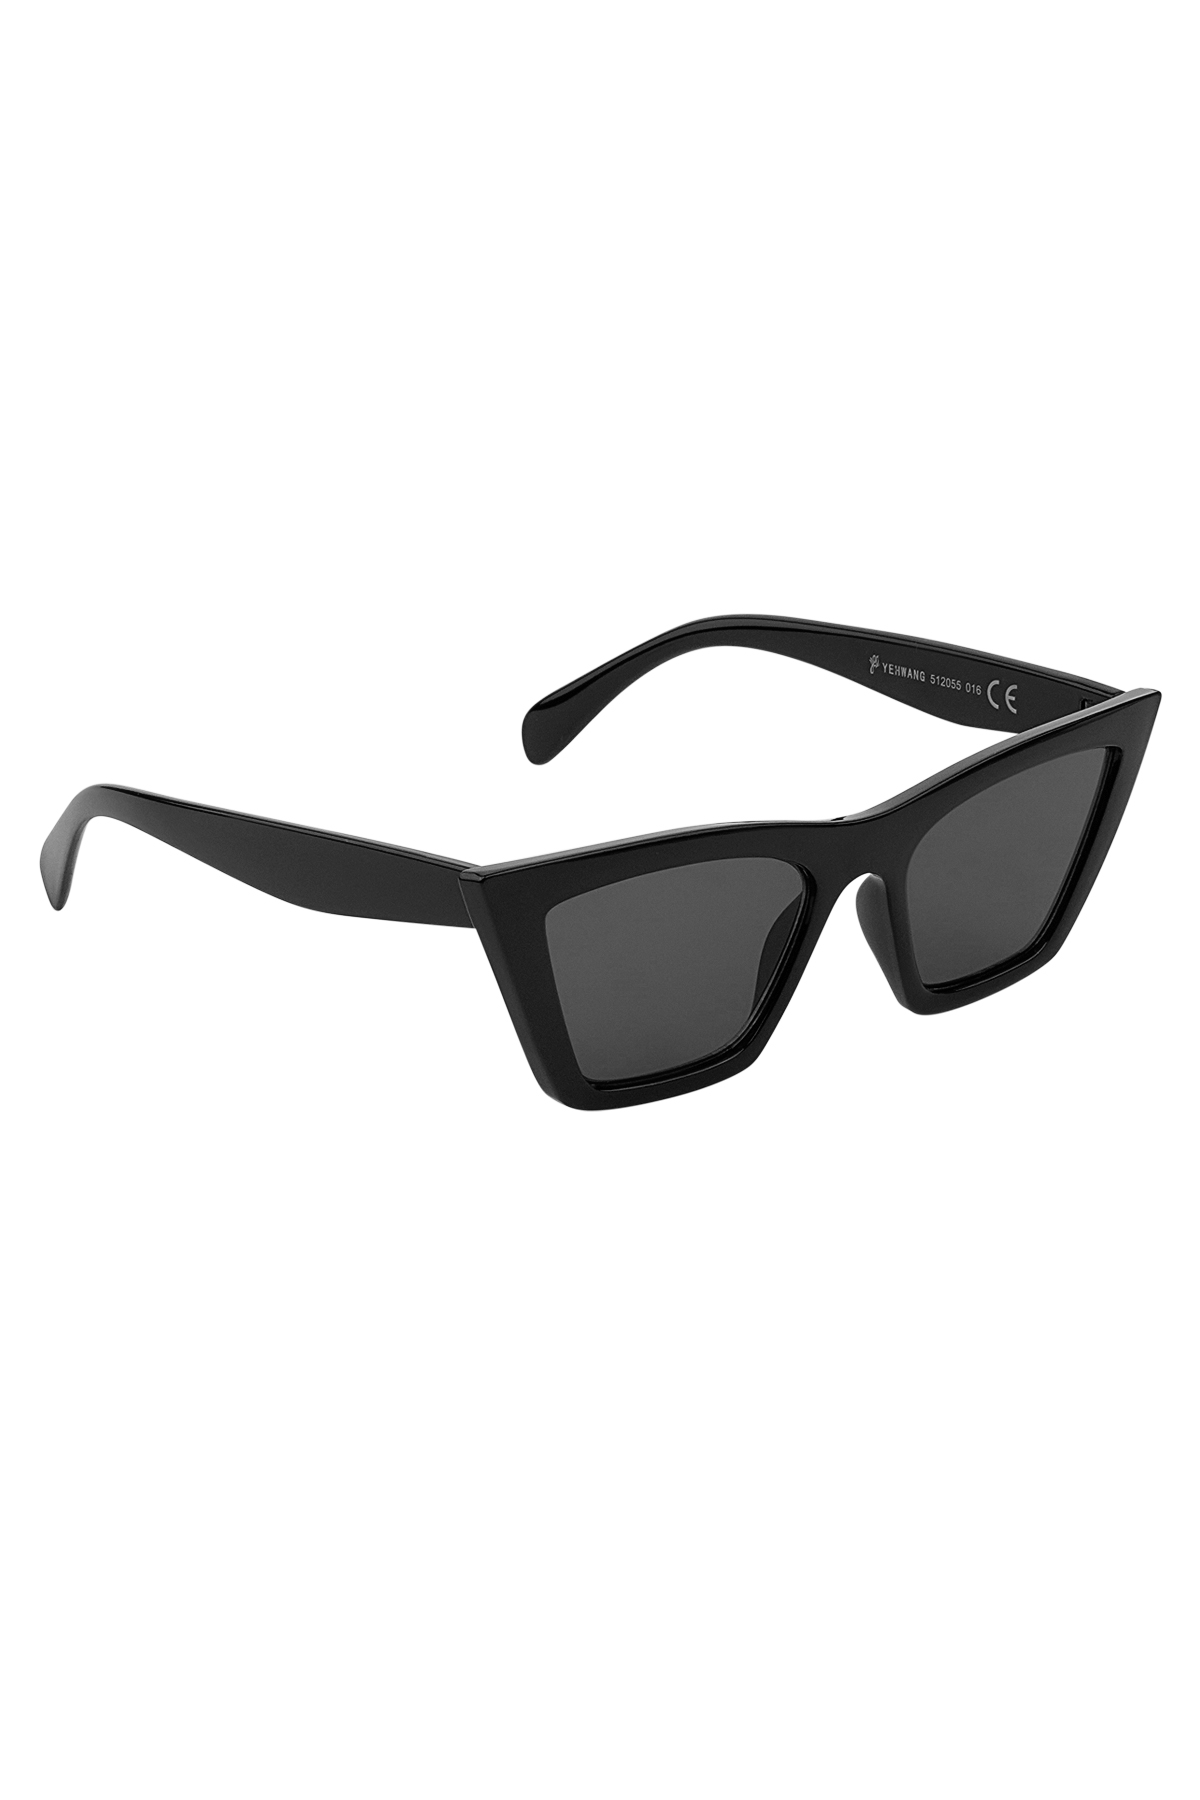 Temel güneş gözlüğü basit - siyah 